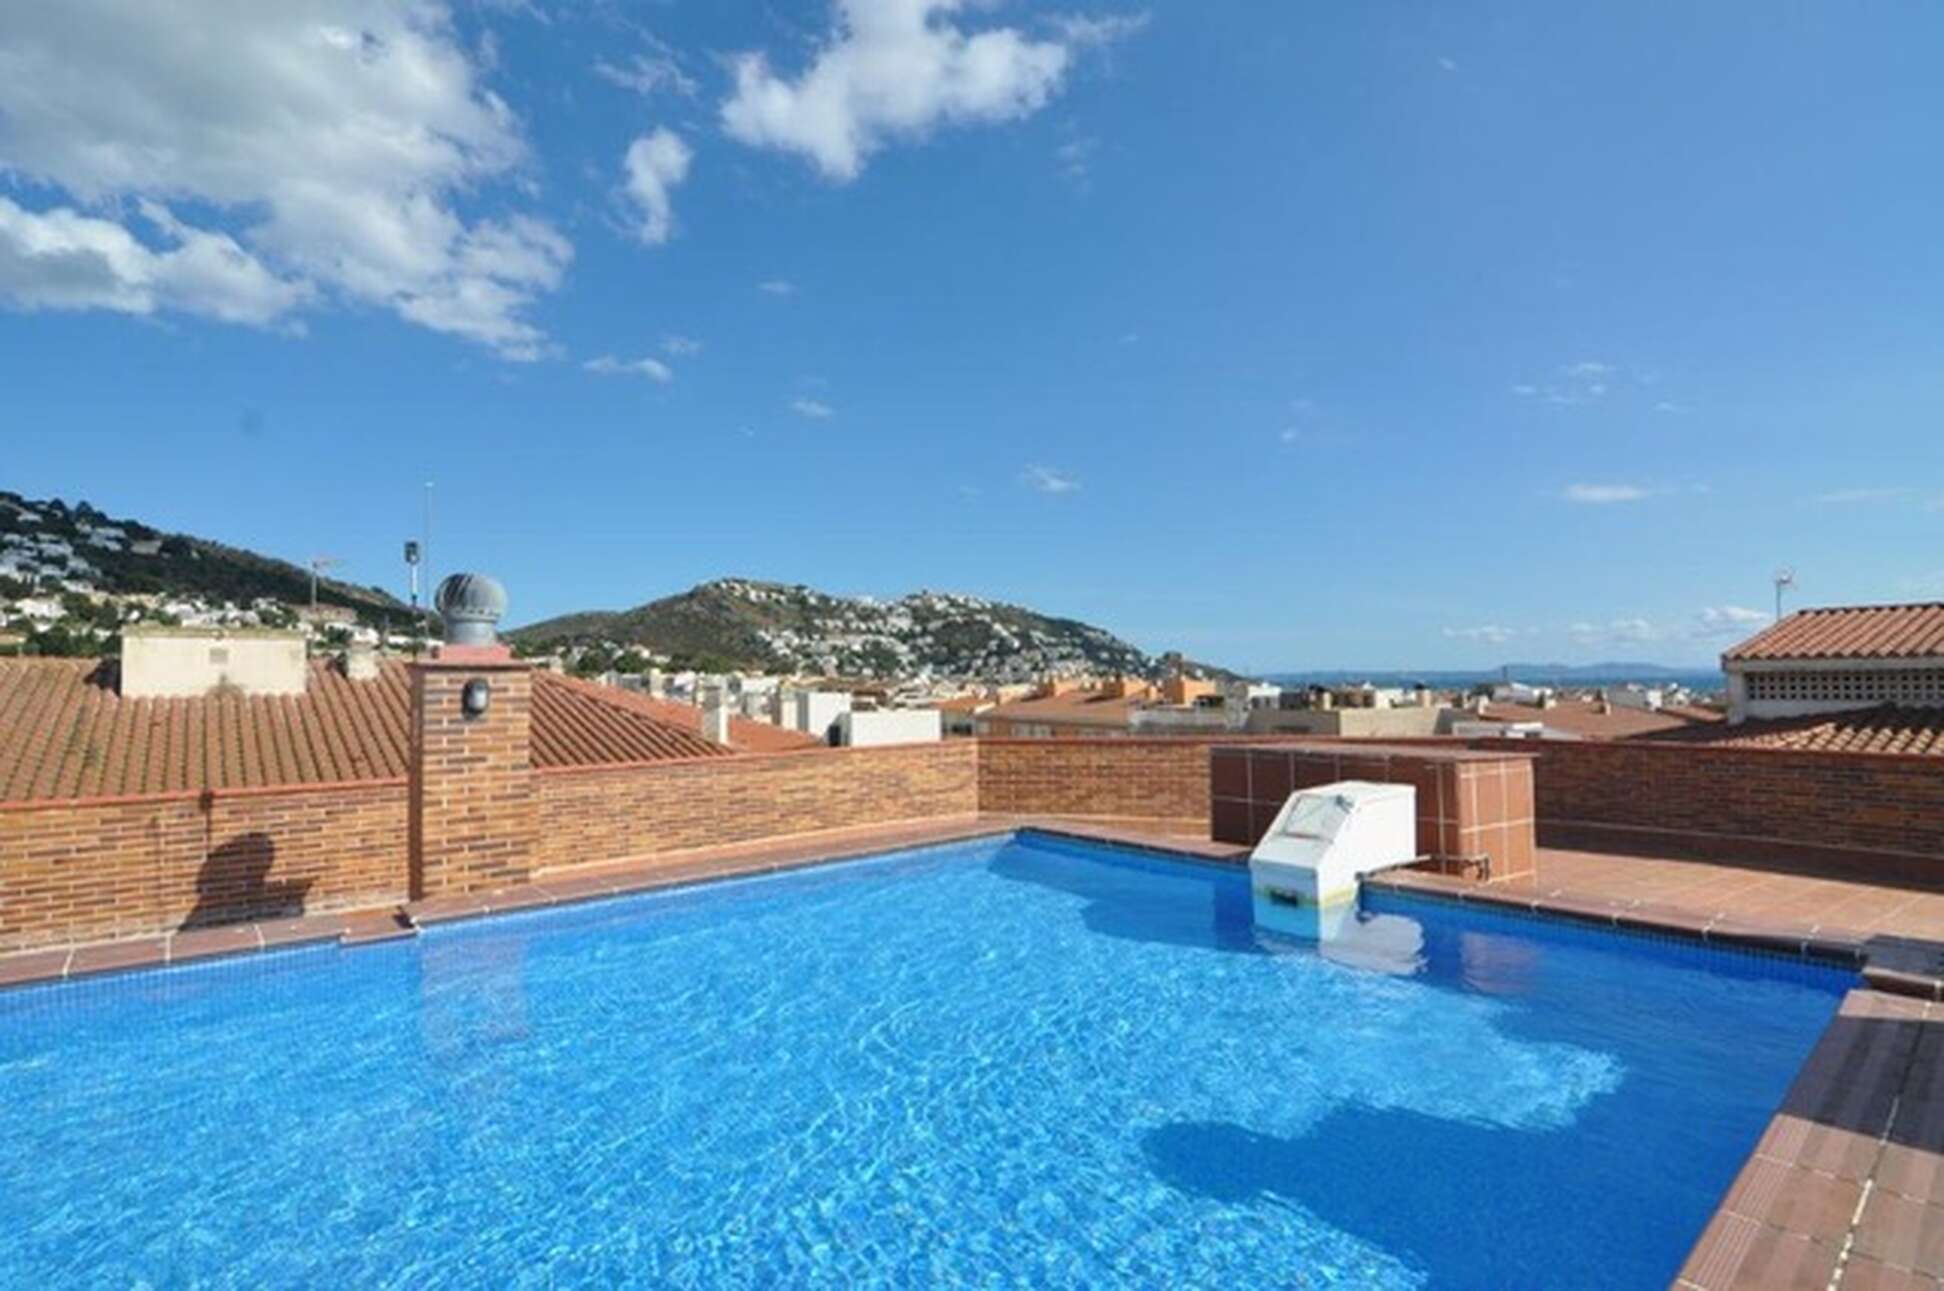 Magnífic apartament amb piscina en venda al centre de Roses